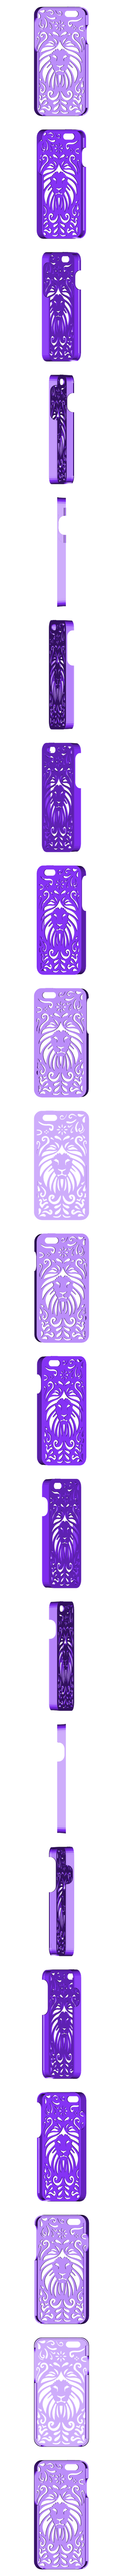 Lion Floral Iphone Case 6 V2.stl Download STL file Tribal Lion Floral Iphone Case 6 6s • 3D print template, Custom3DPrinting